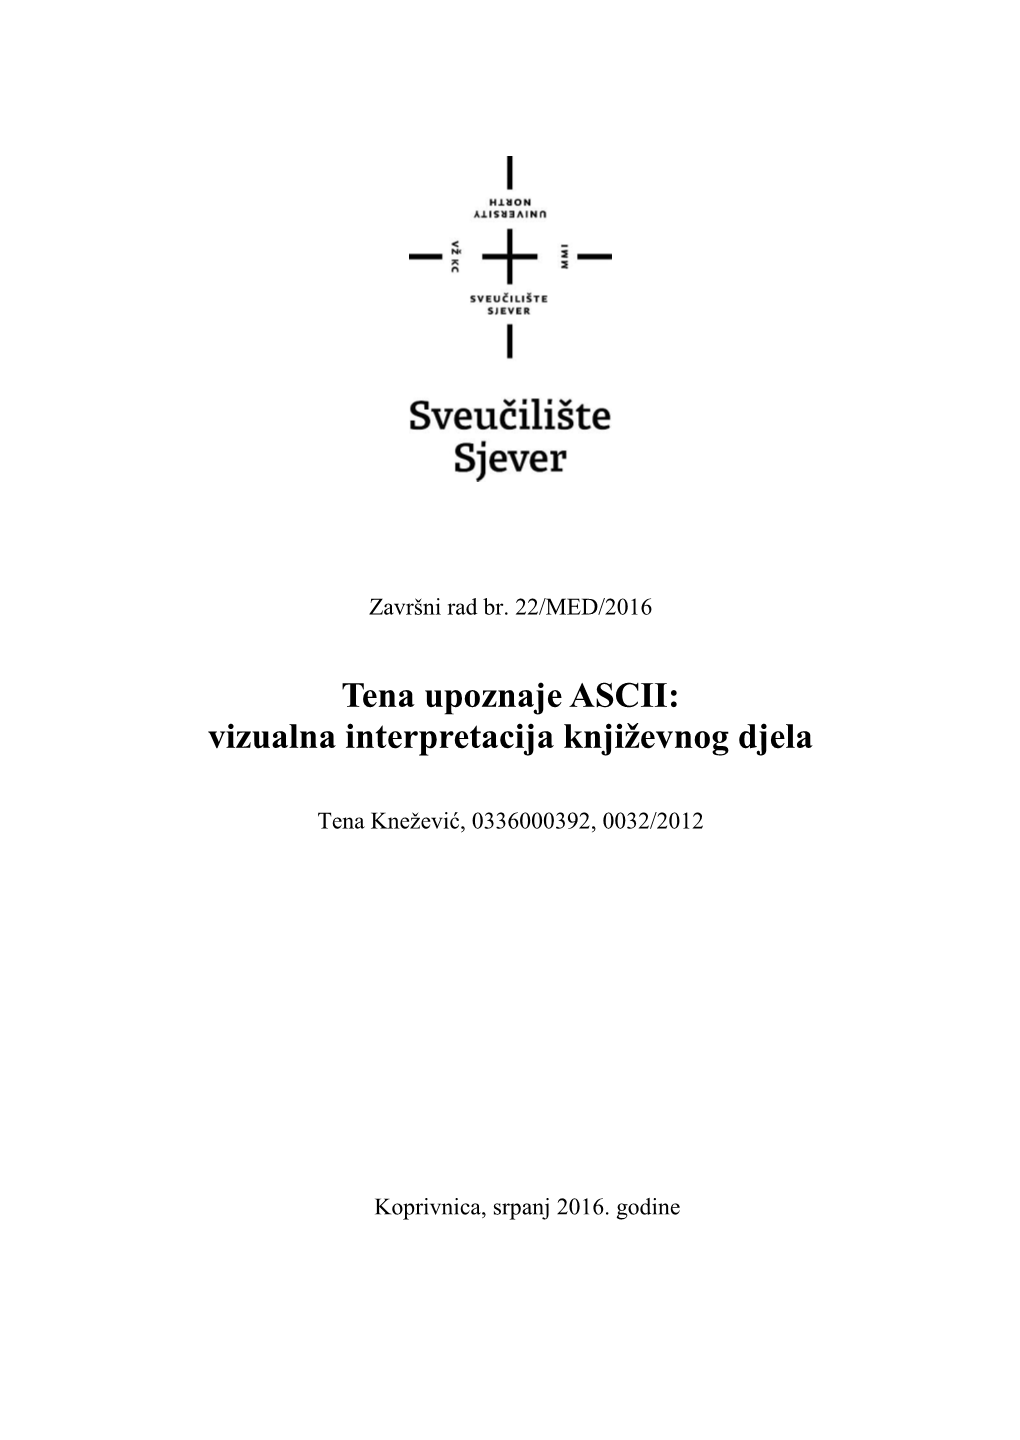 Tena Upoznaje ASCII: Vizualna Interpretacija Književnog Djela